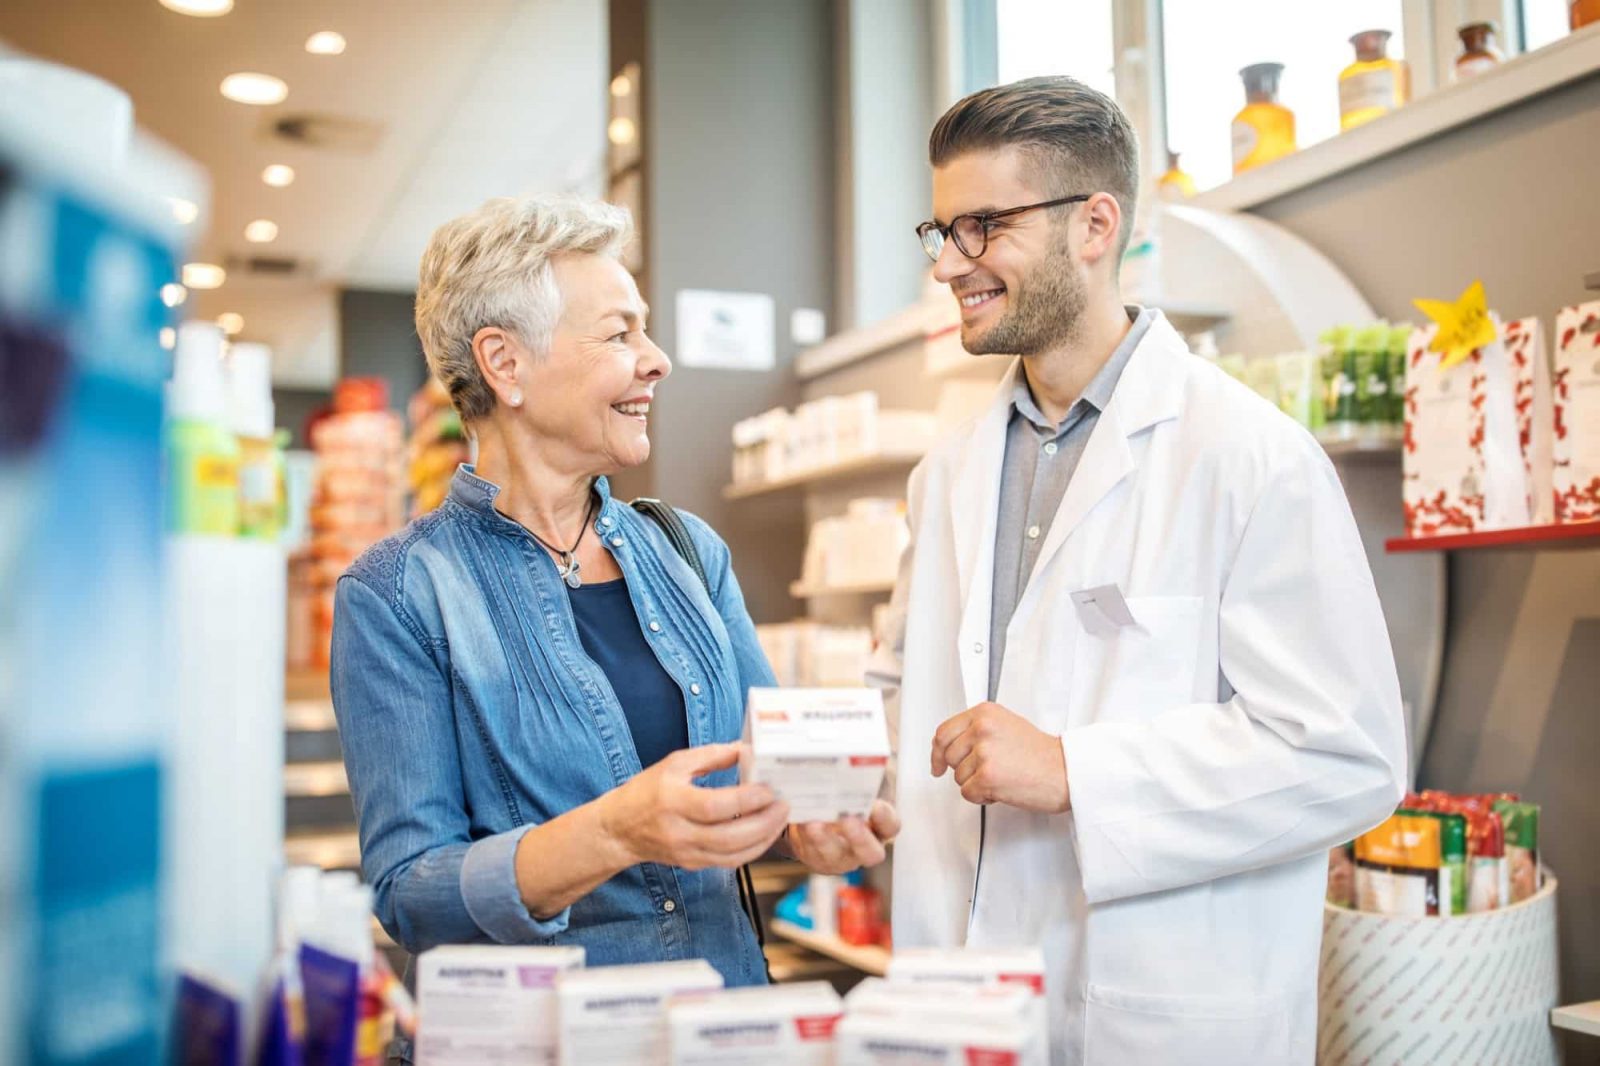  Marketing para farmácia: 5 ideias para melhorar sua divulgação!